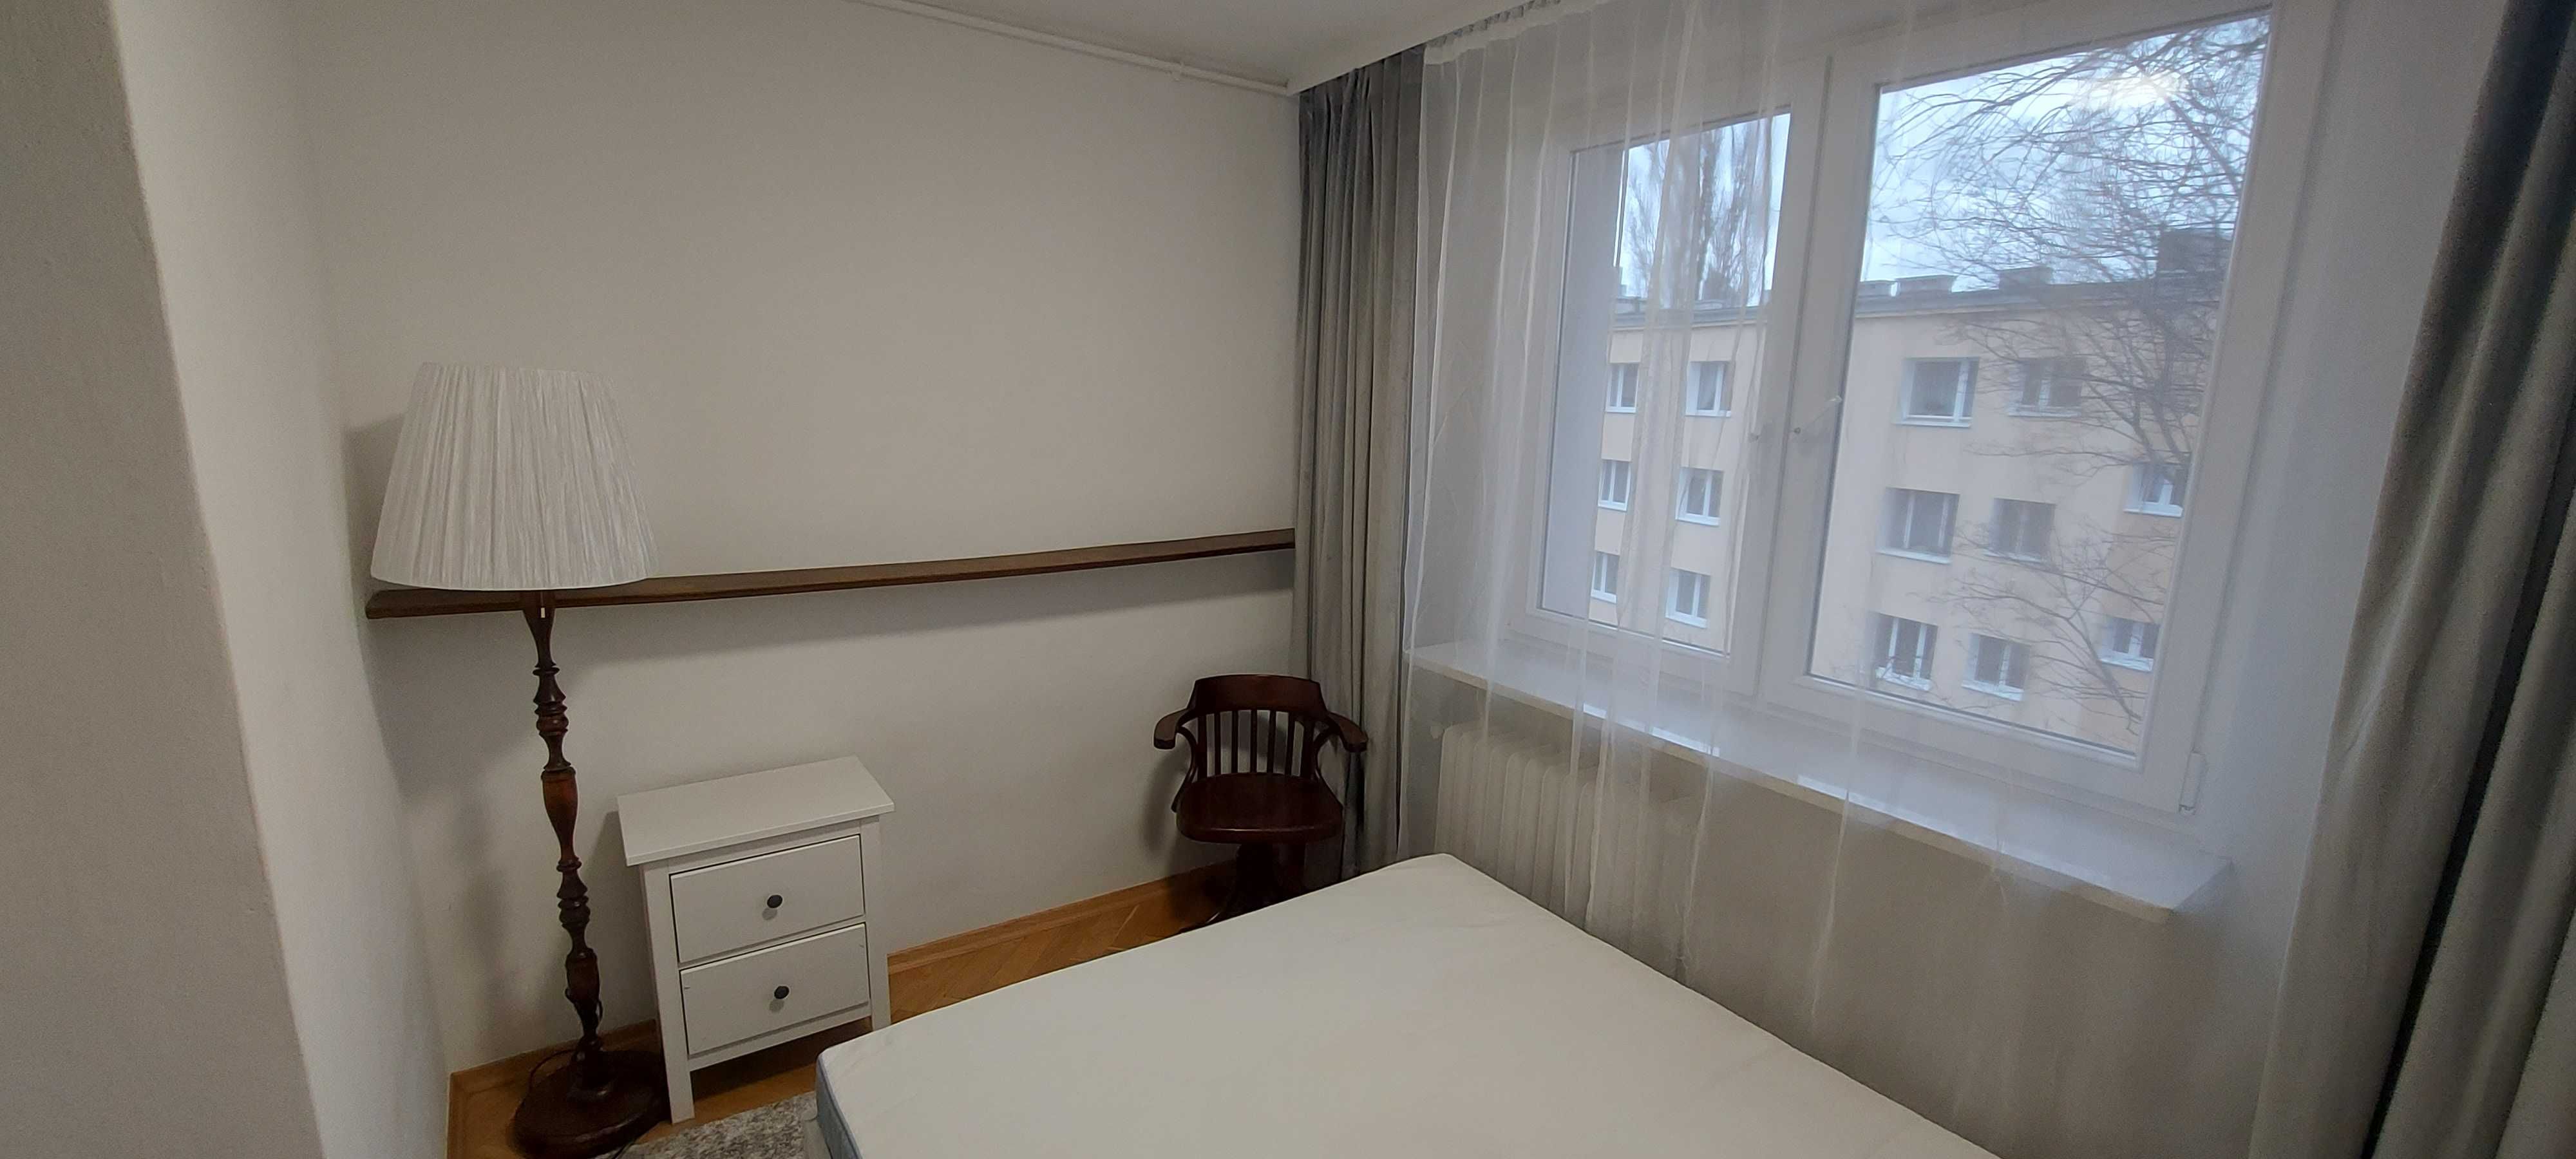 Mieszkanie do wynajęcia, Warszawa Wola, 58 m2, 3 pokoje, blisko metra